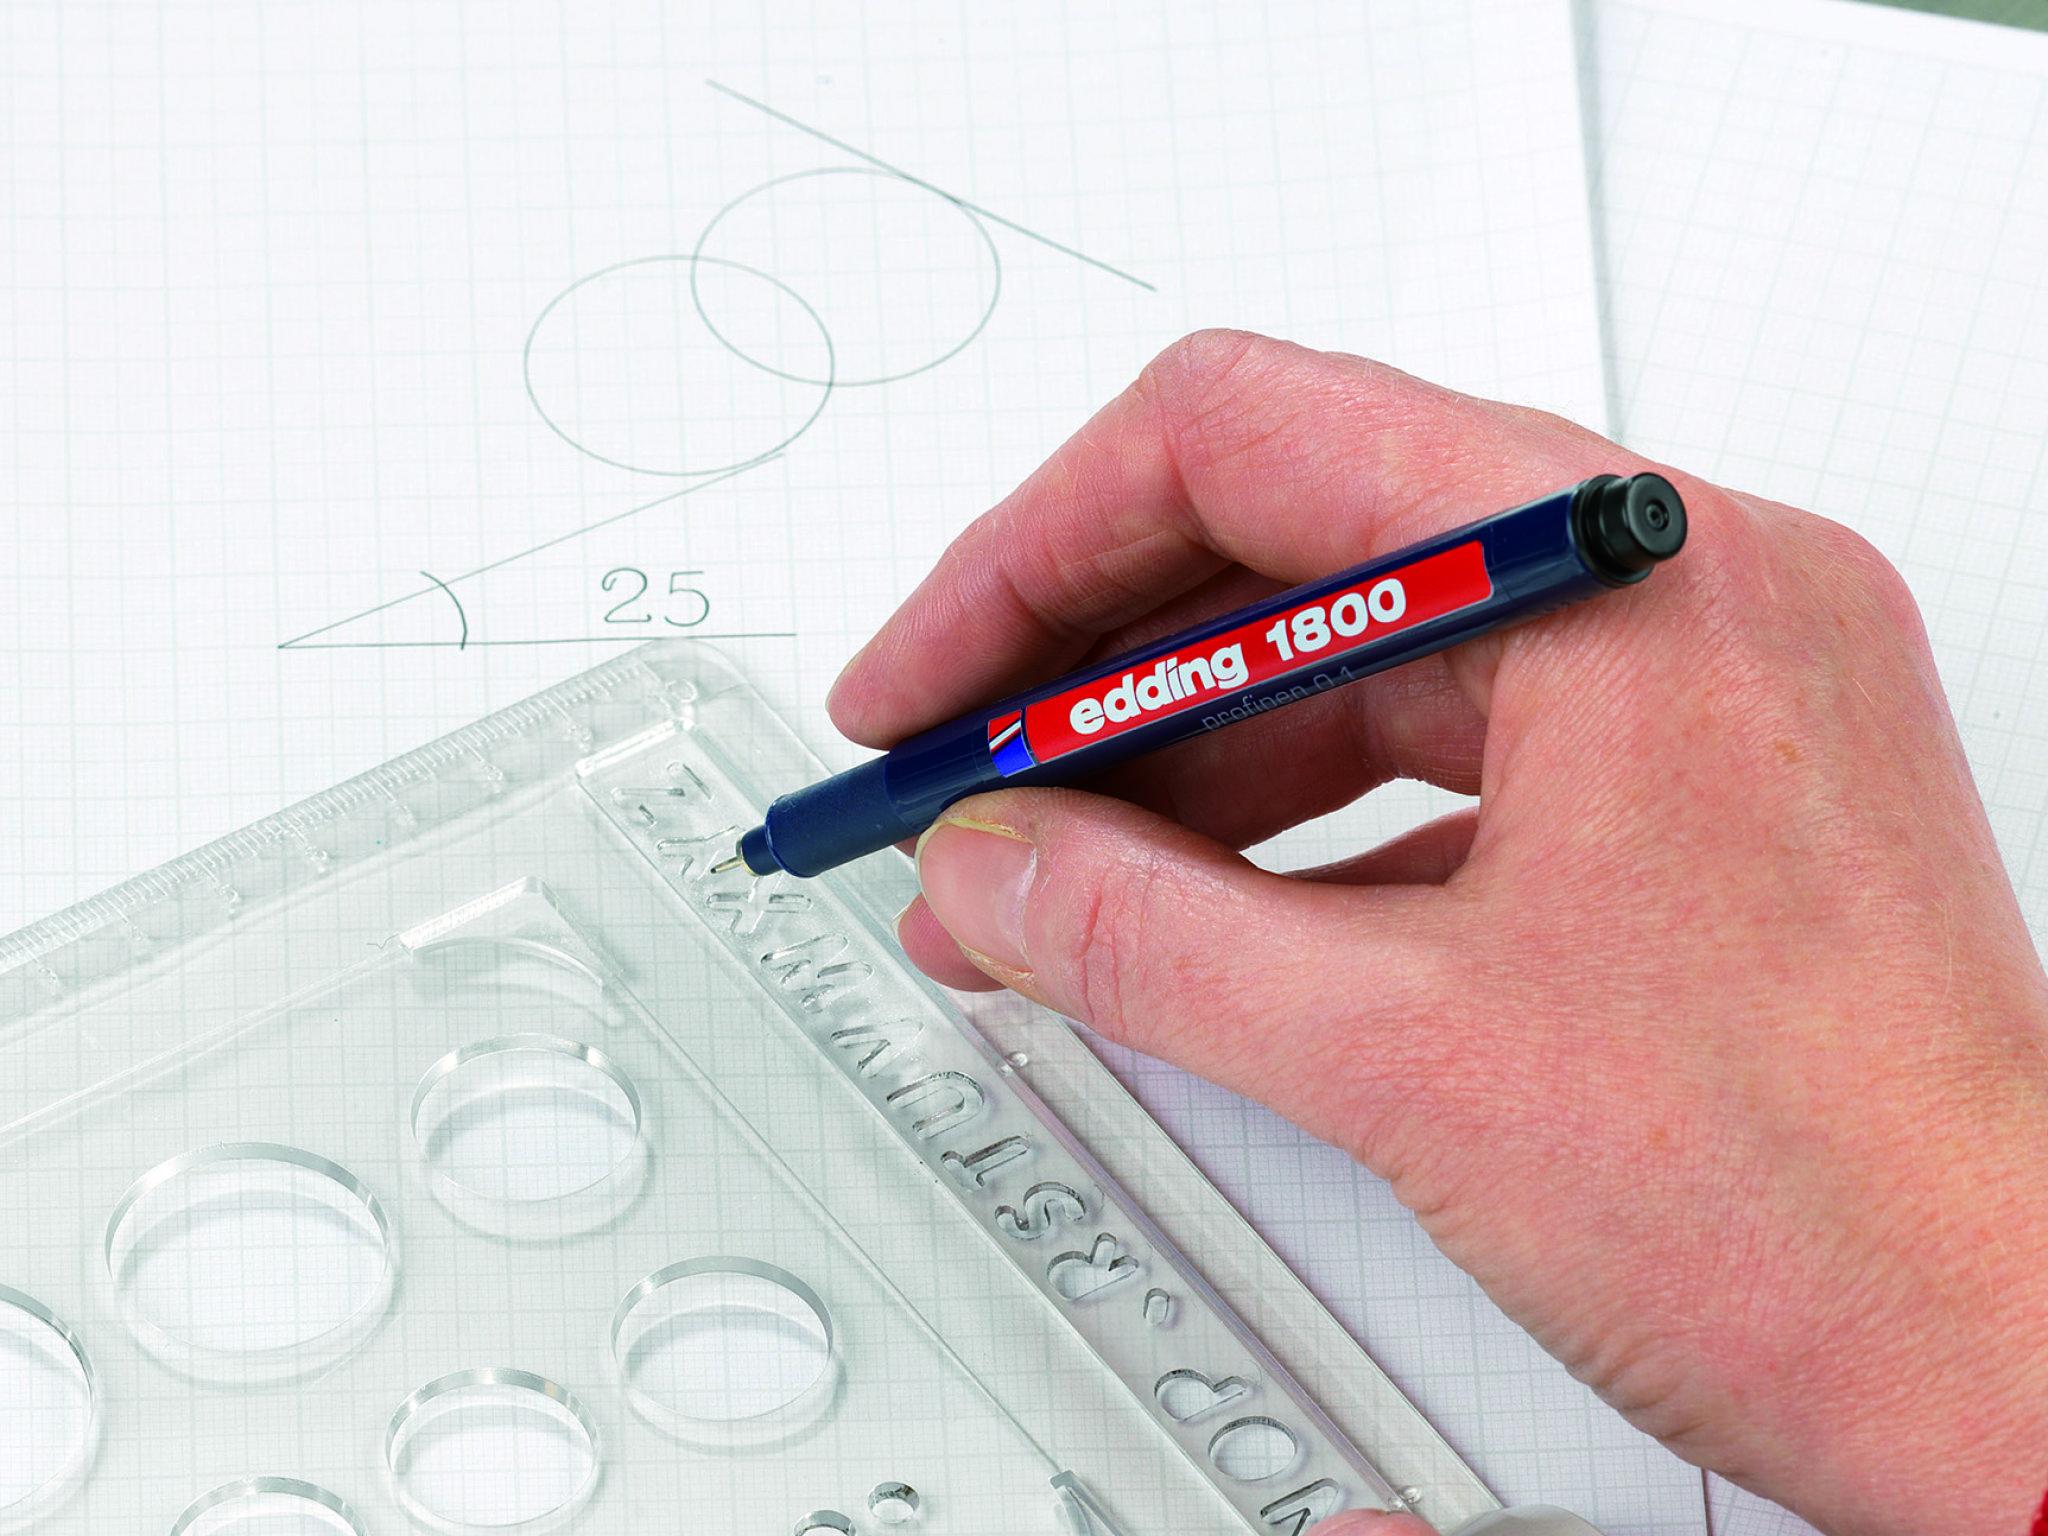 Technisches Zeichnen: Eine Hand hält einen edding 1800 Präzisionsfeinschreiber 3er-Set über ein Blatt Millimeterpapier mit geometrischen Formen und einem klaren Lineal für genaue Messungen.